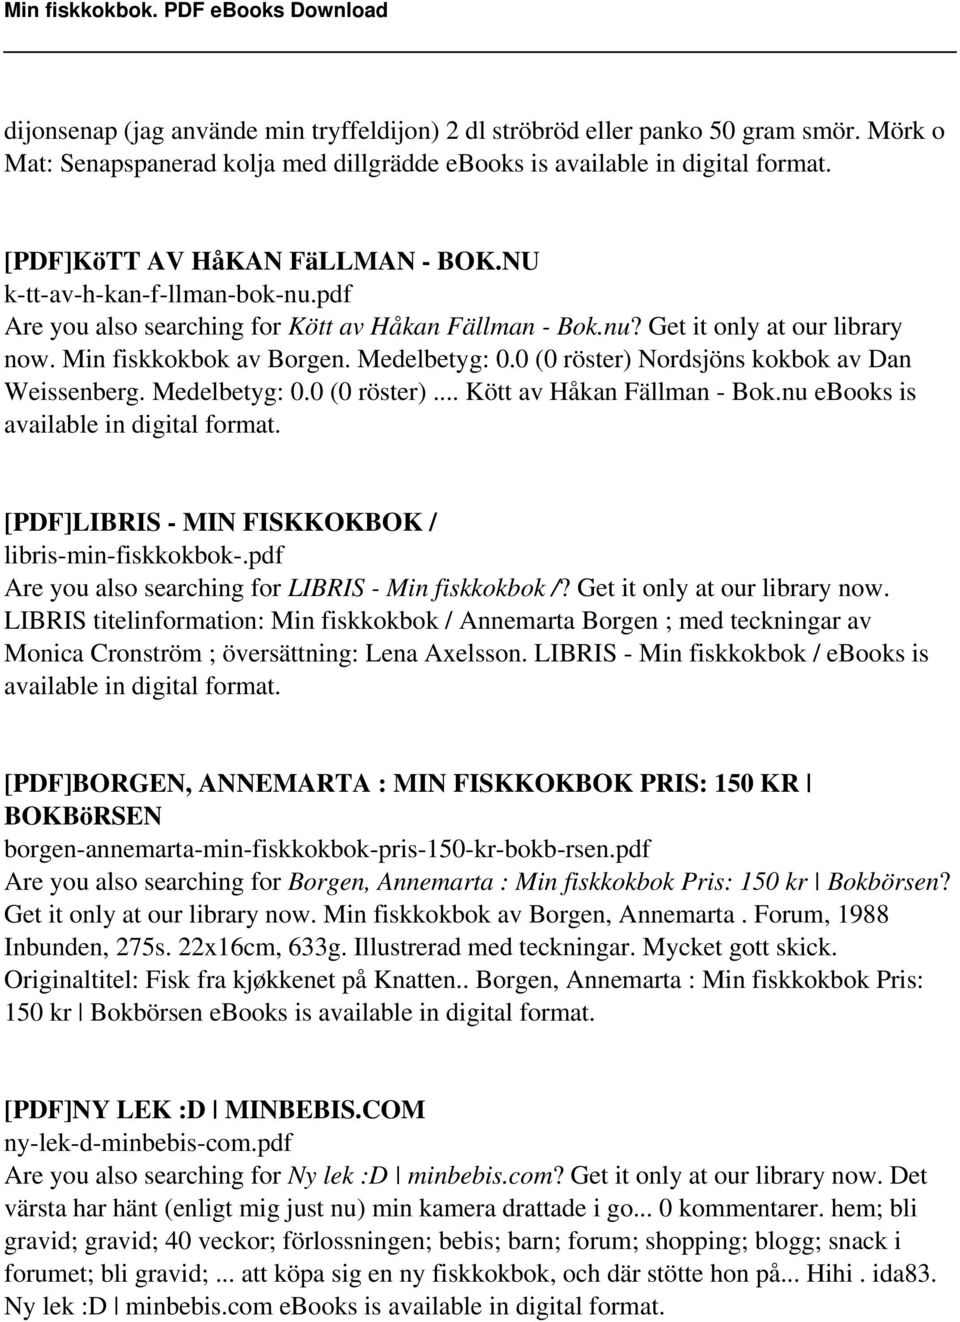 0 (0 röster) Nordsjöns kokbok av Dan Weissenberg. Medelbetyg: 0.0 (0 röster)... Kött av Håkan Fällman - Bok.nu ebooks is [PDF]LIBRIS - MIN FISKKOKBOK / libris-min-fiskkokbok-.